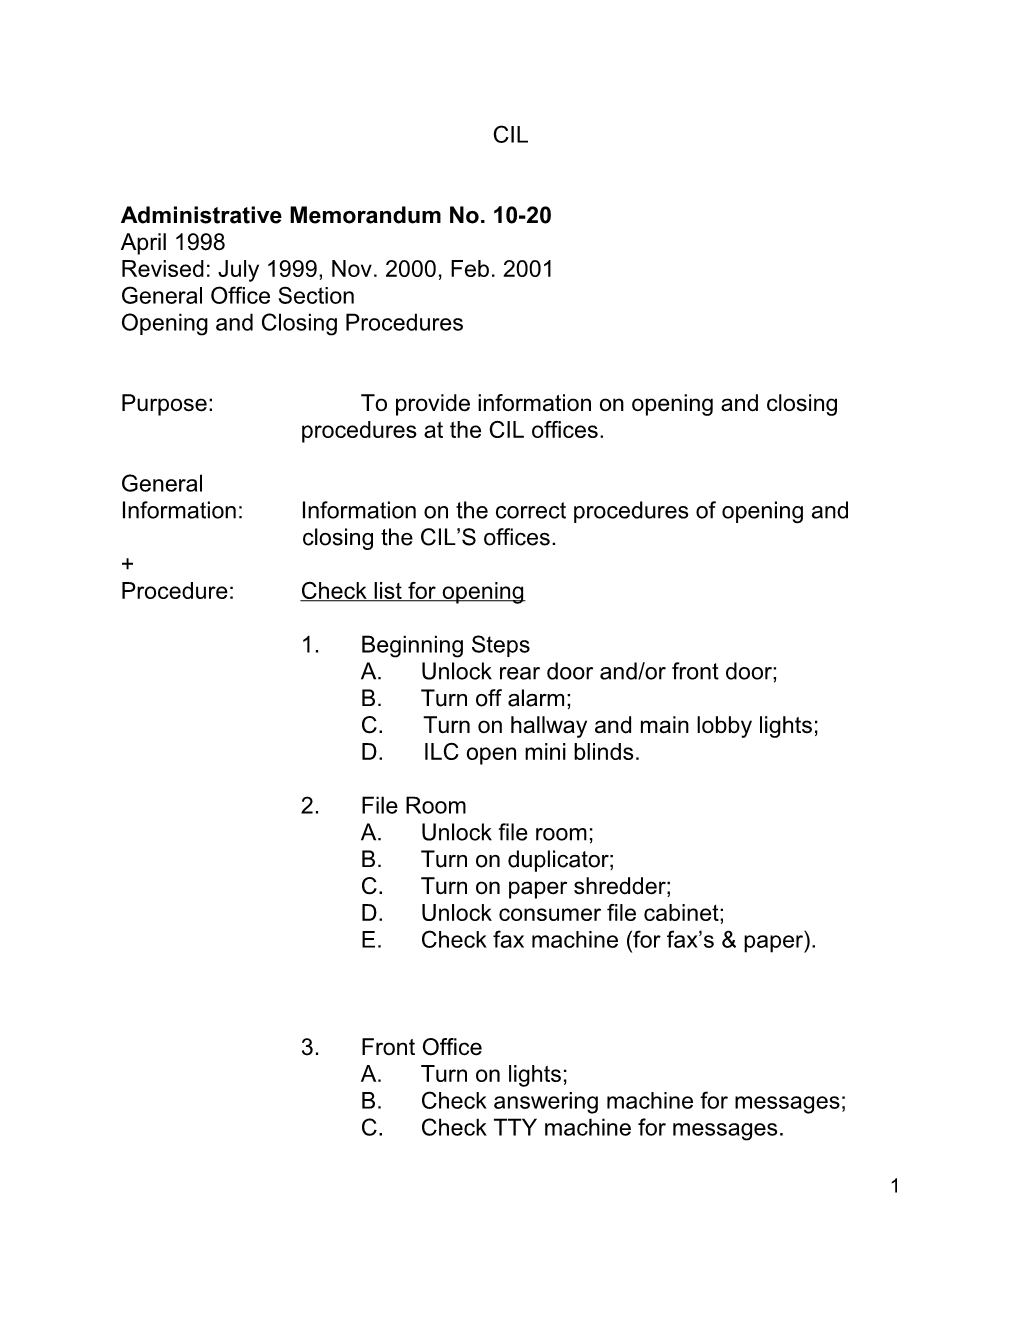 Administrative Memorandum No. 10-20